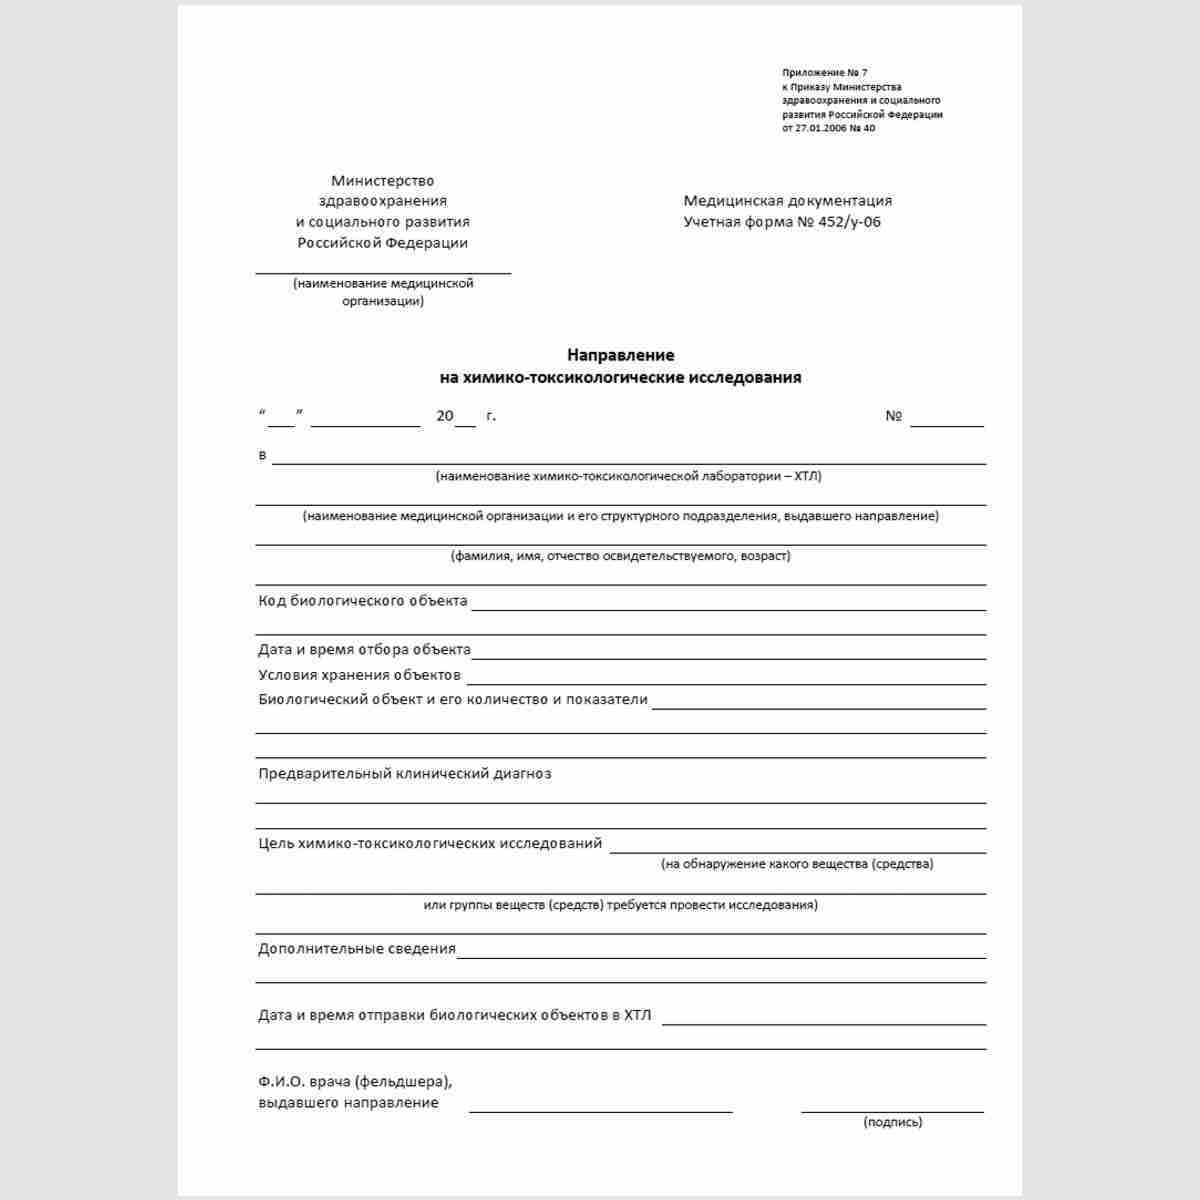 Учетная форма №452/у-06 "Направление на химико-токсикологические исследования"